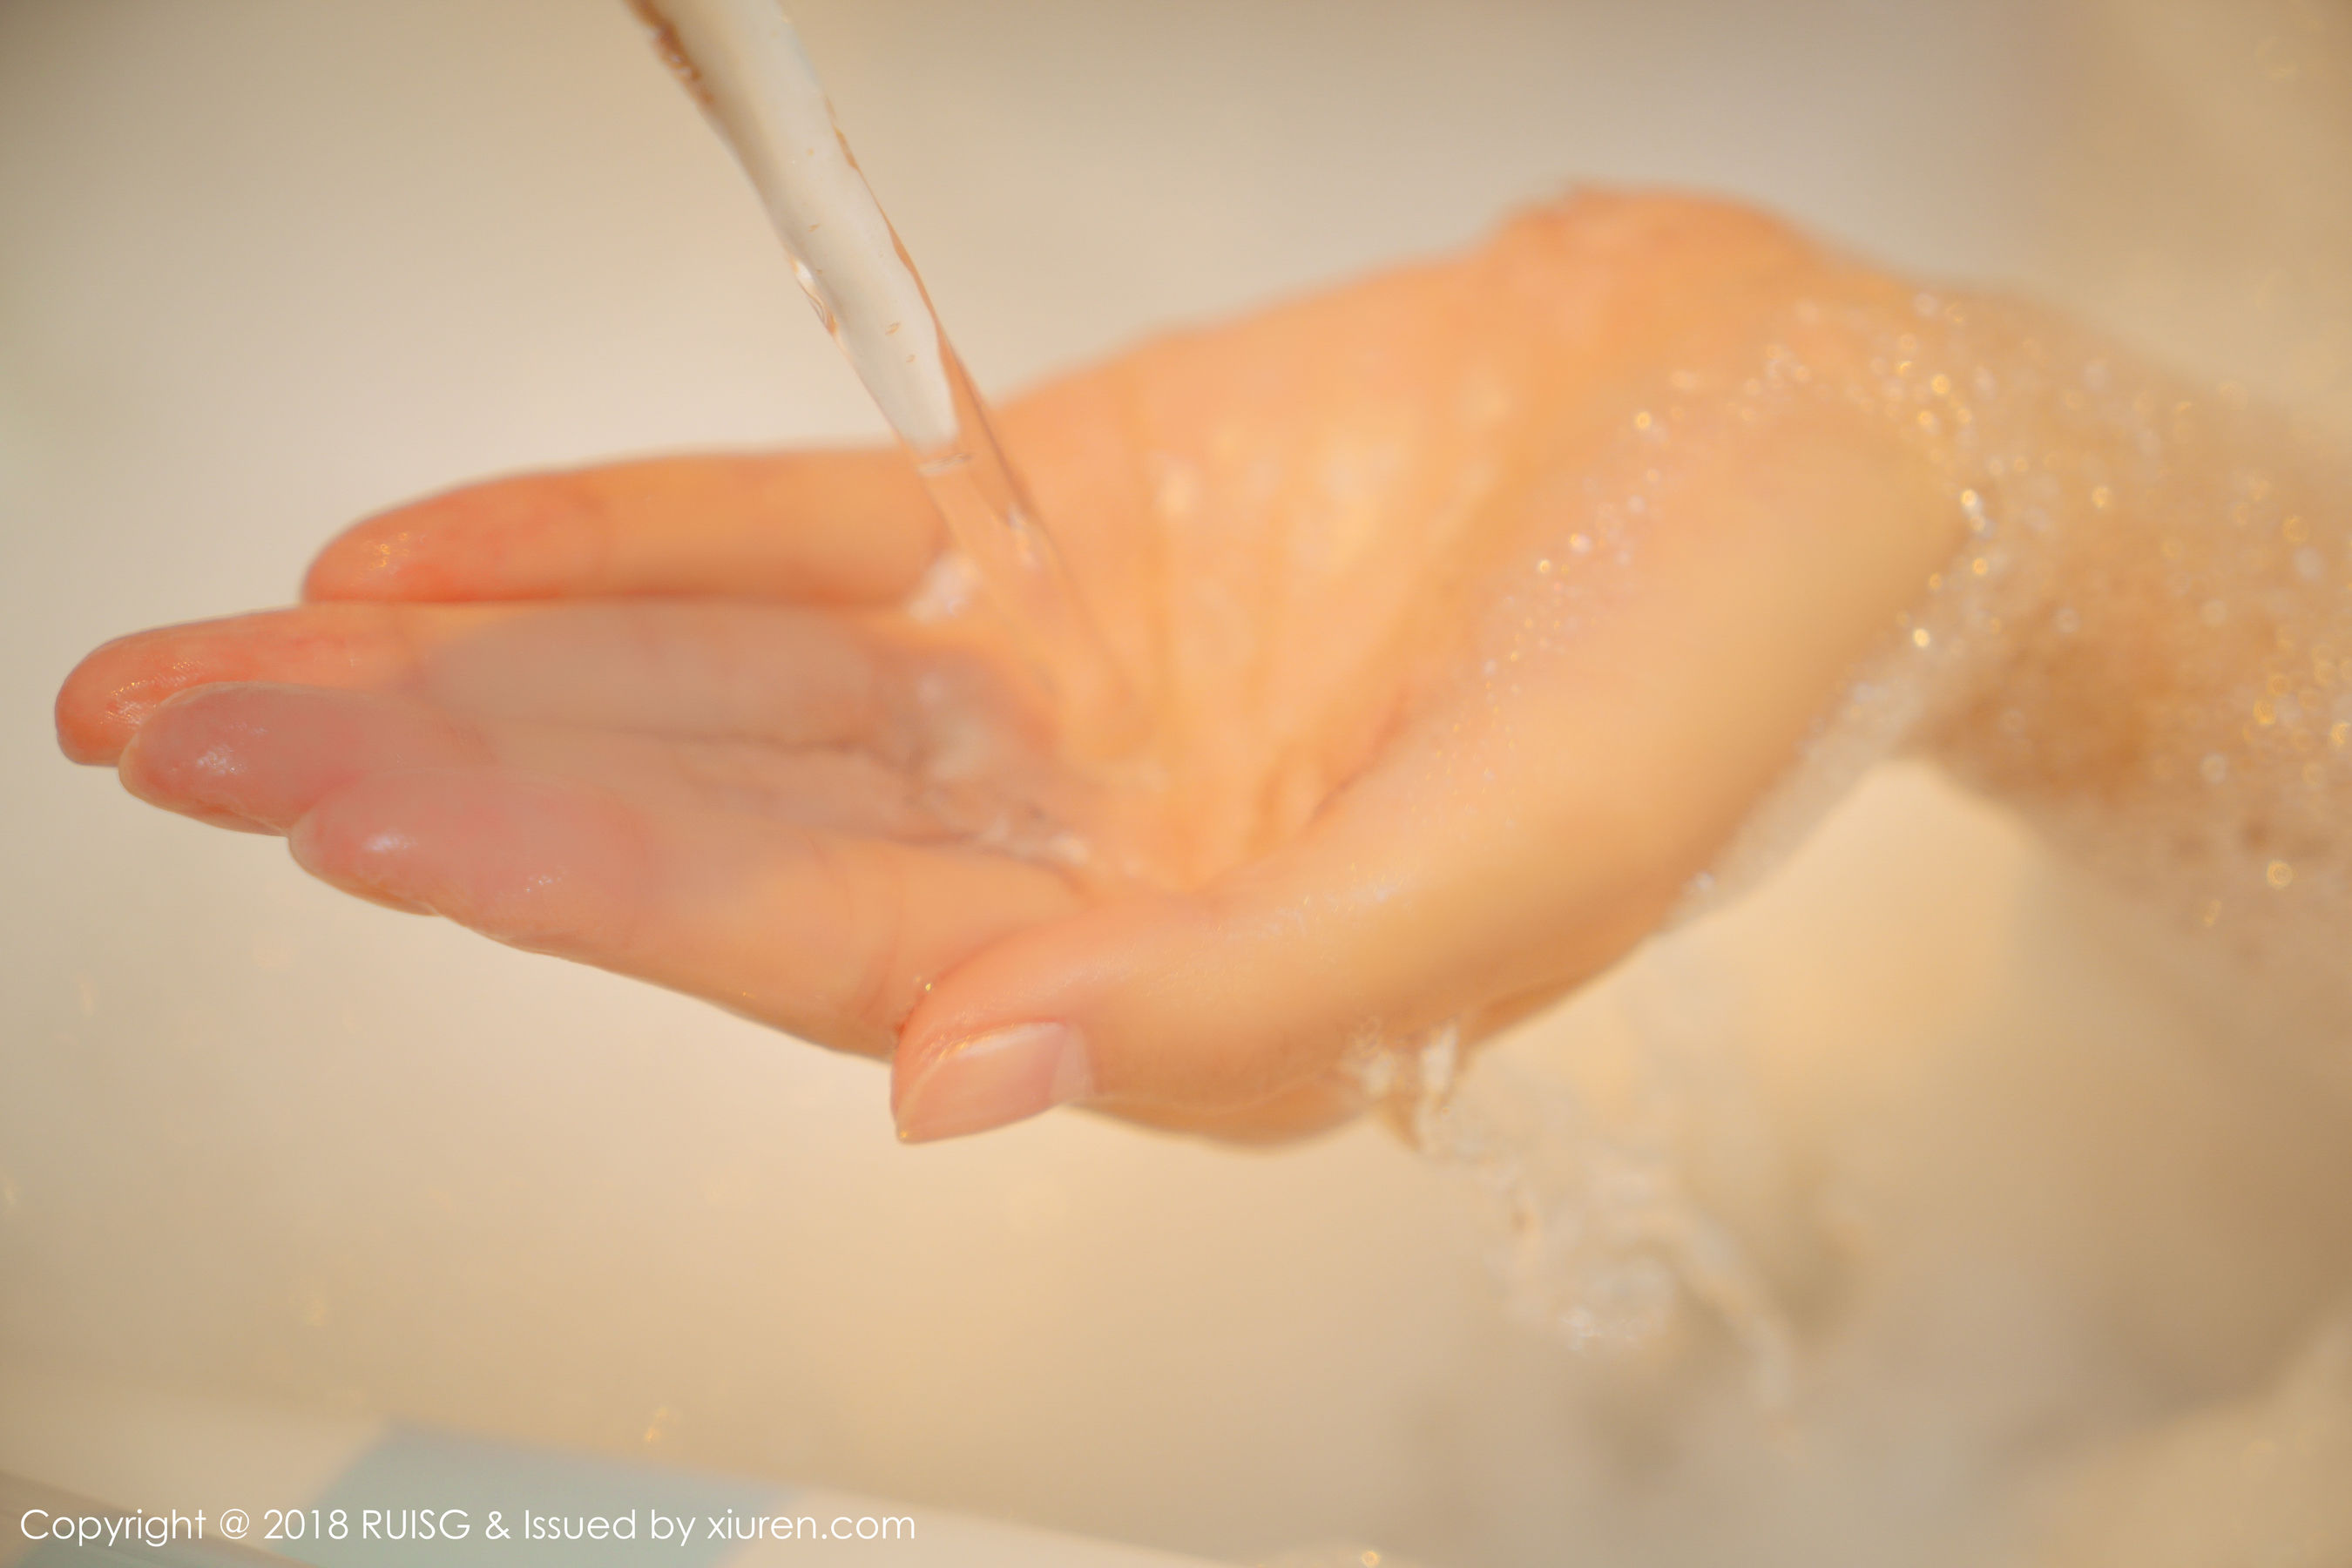 M Dream Baby “Bubble bath” [Rui Ri Ruisg] Vol.052 Photo Collection